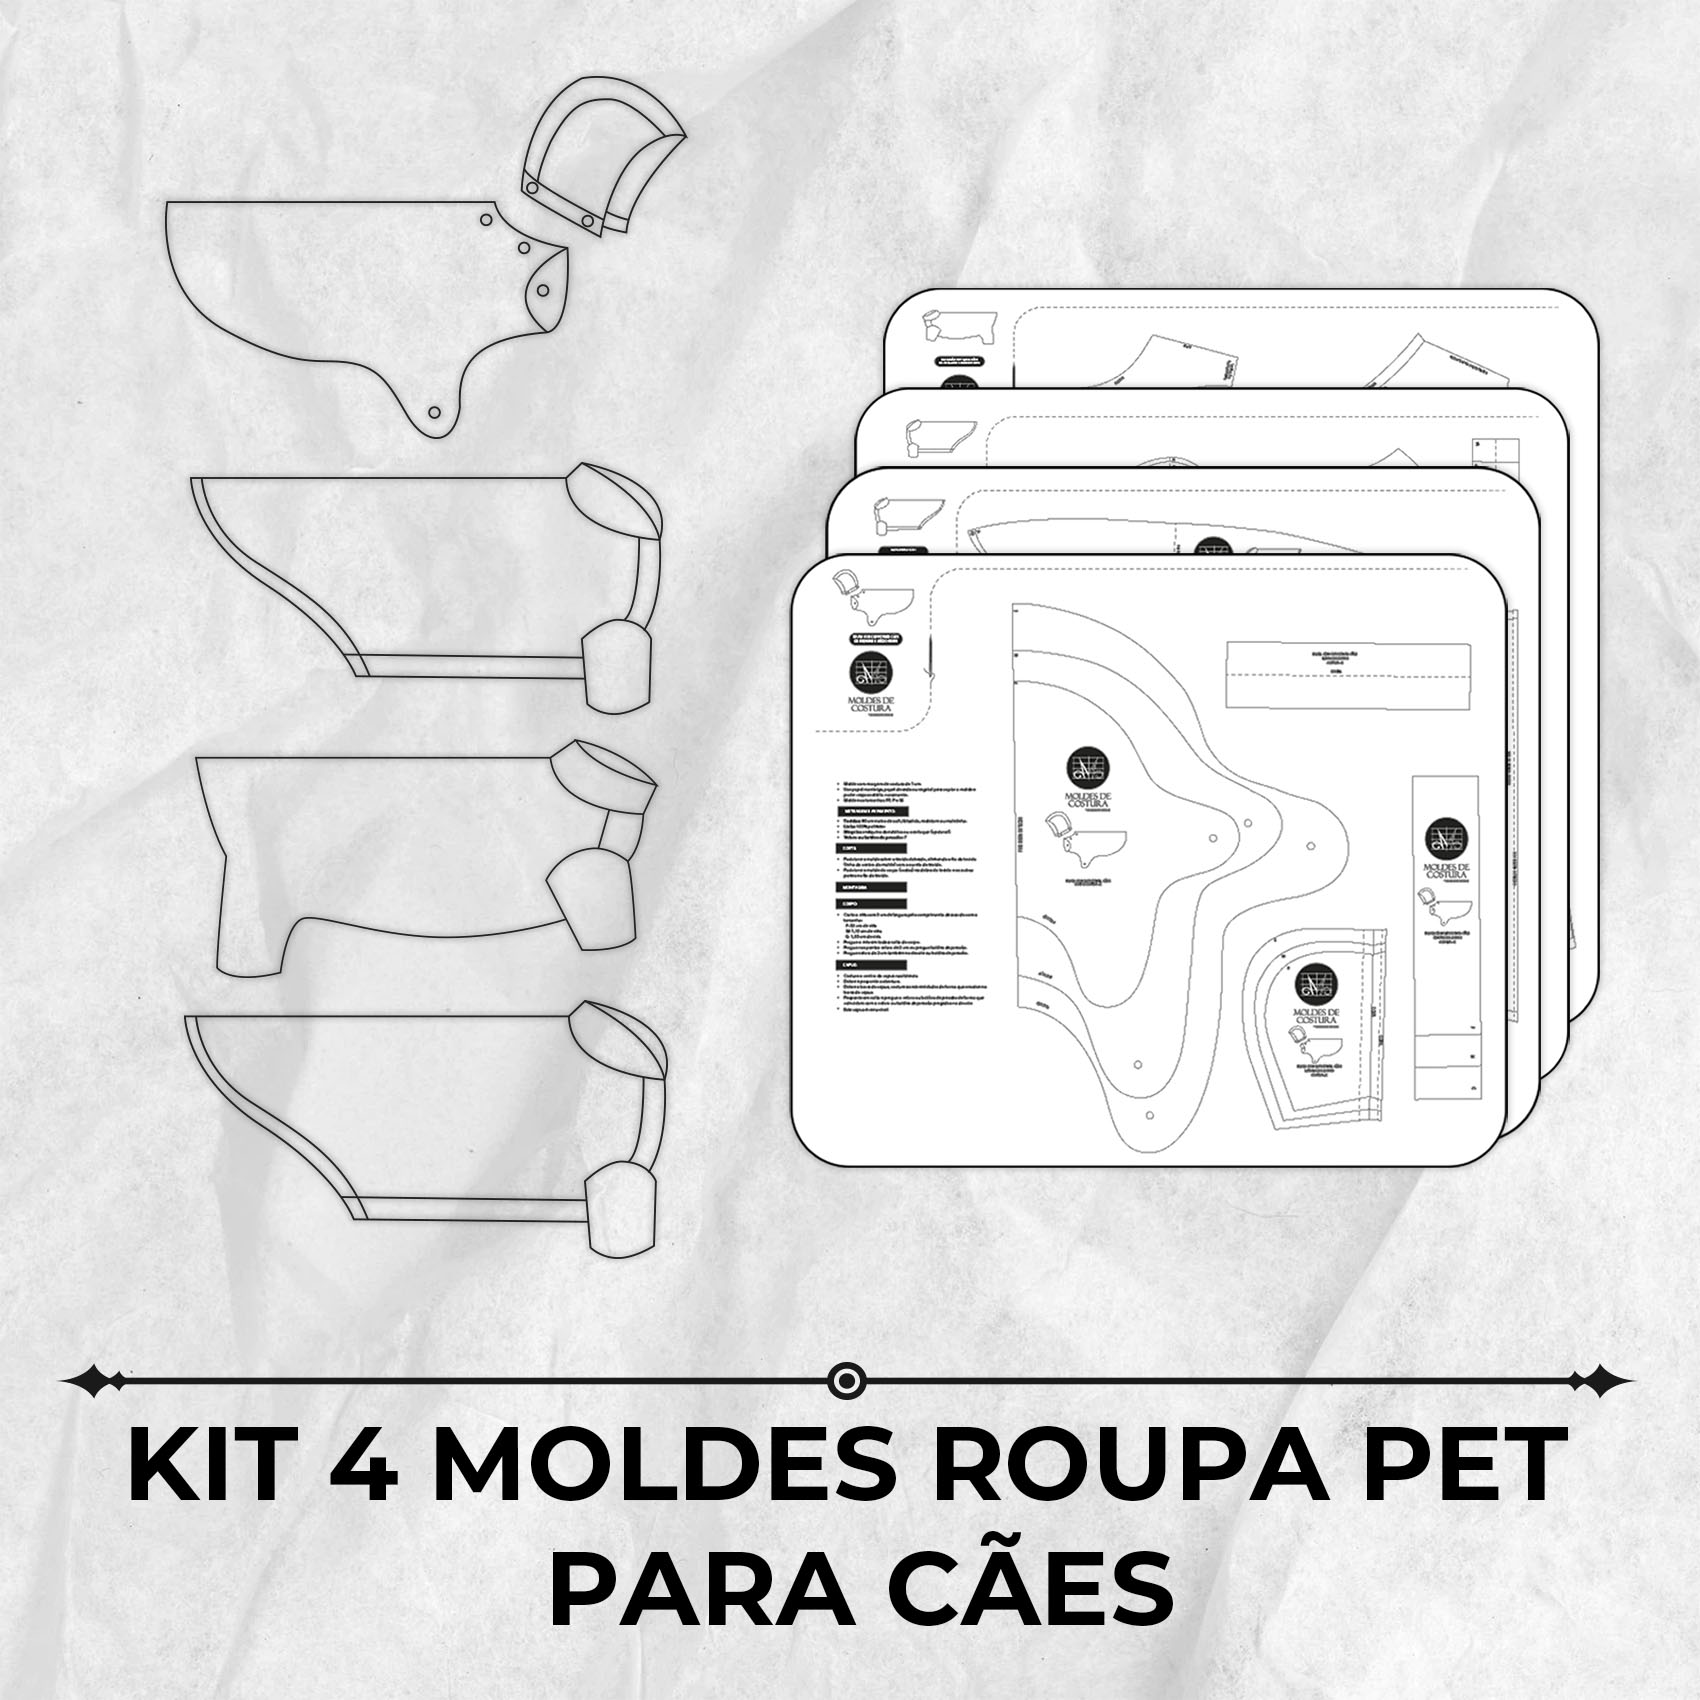 Kit 4 moldes roupa pet para cães by Marlene Mukai